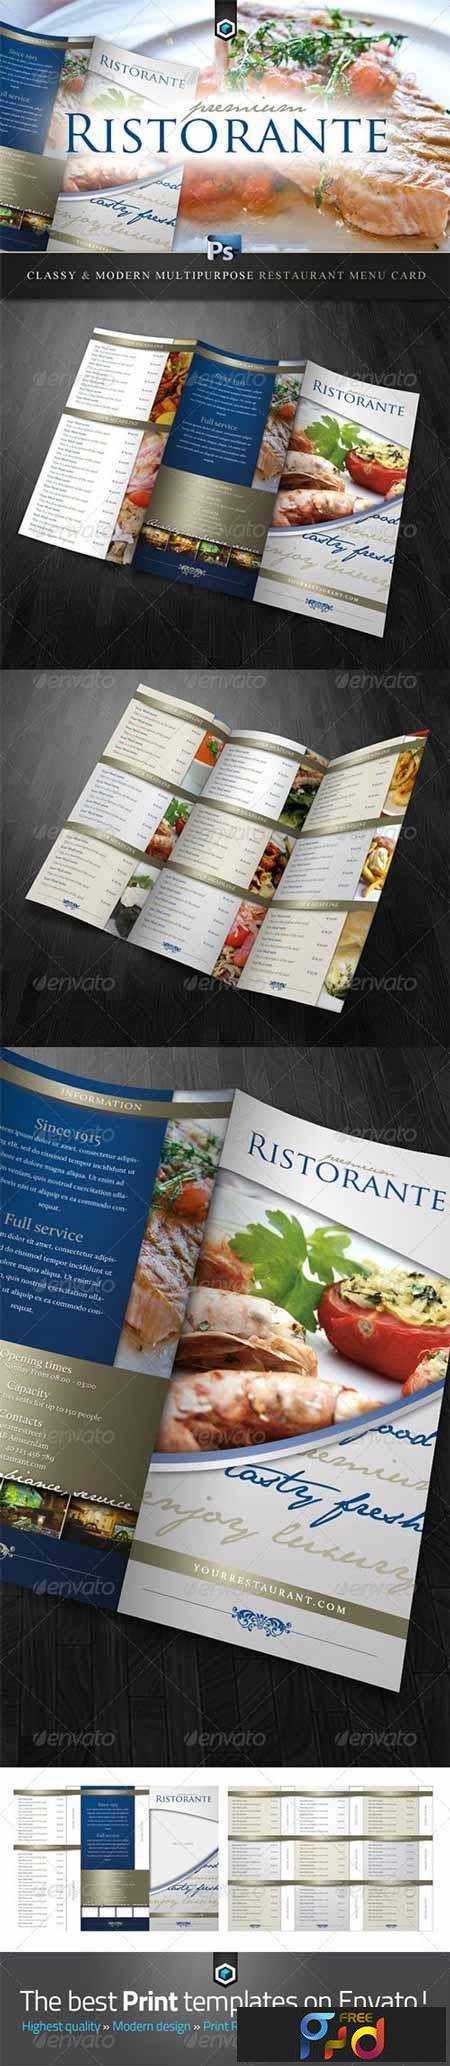 freepsdvn-com_1420590073_rw_classy_restaurant_menu_card_template_2201806